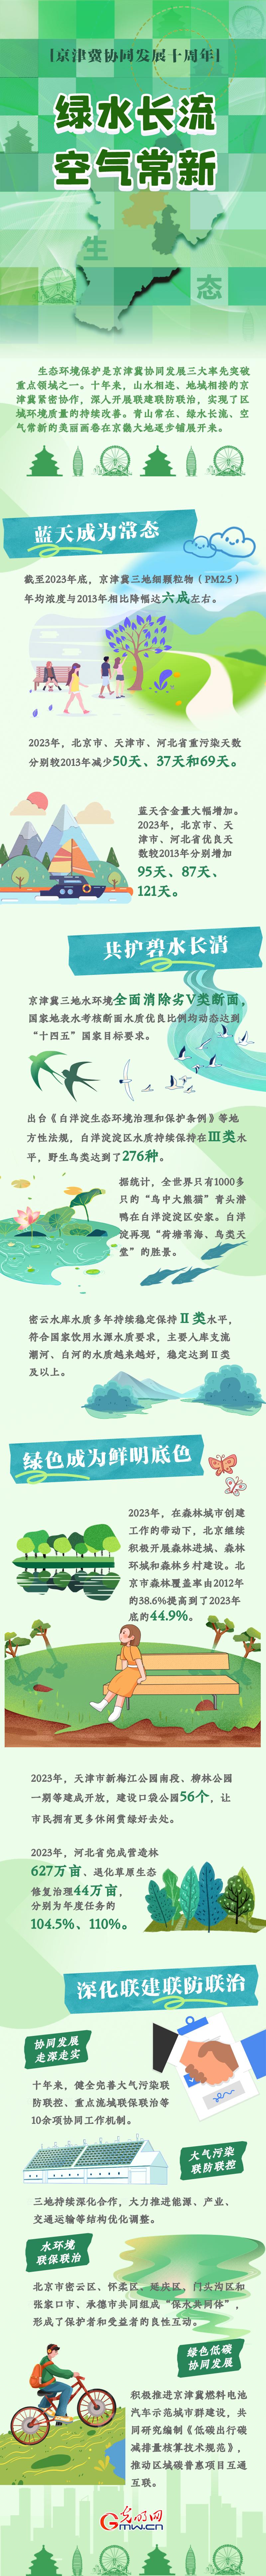 京津冀协同发展十周年丨绿水长流 空气常新